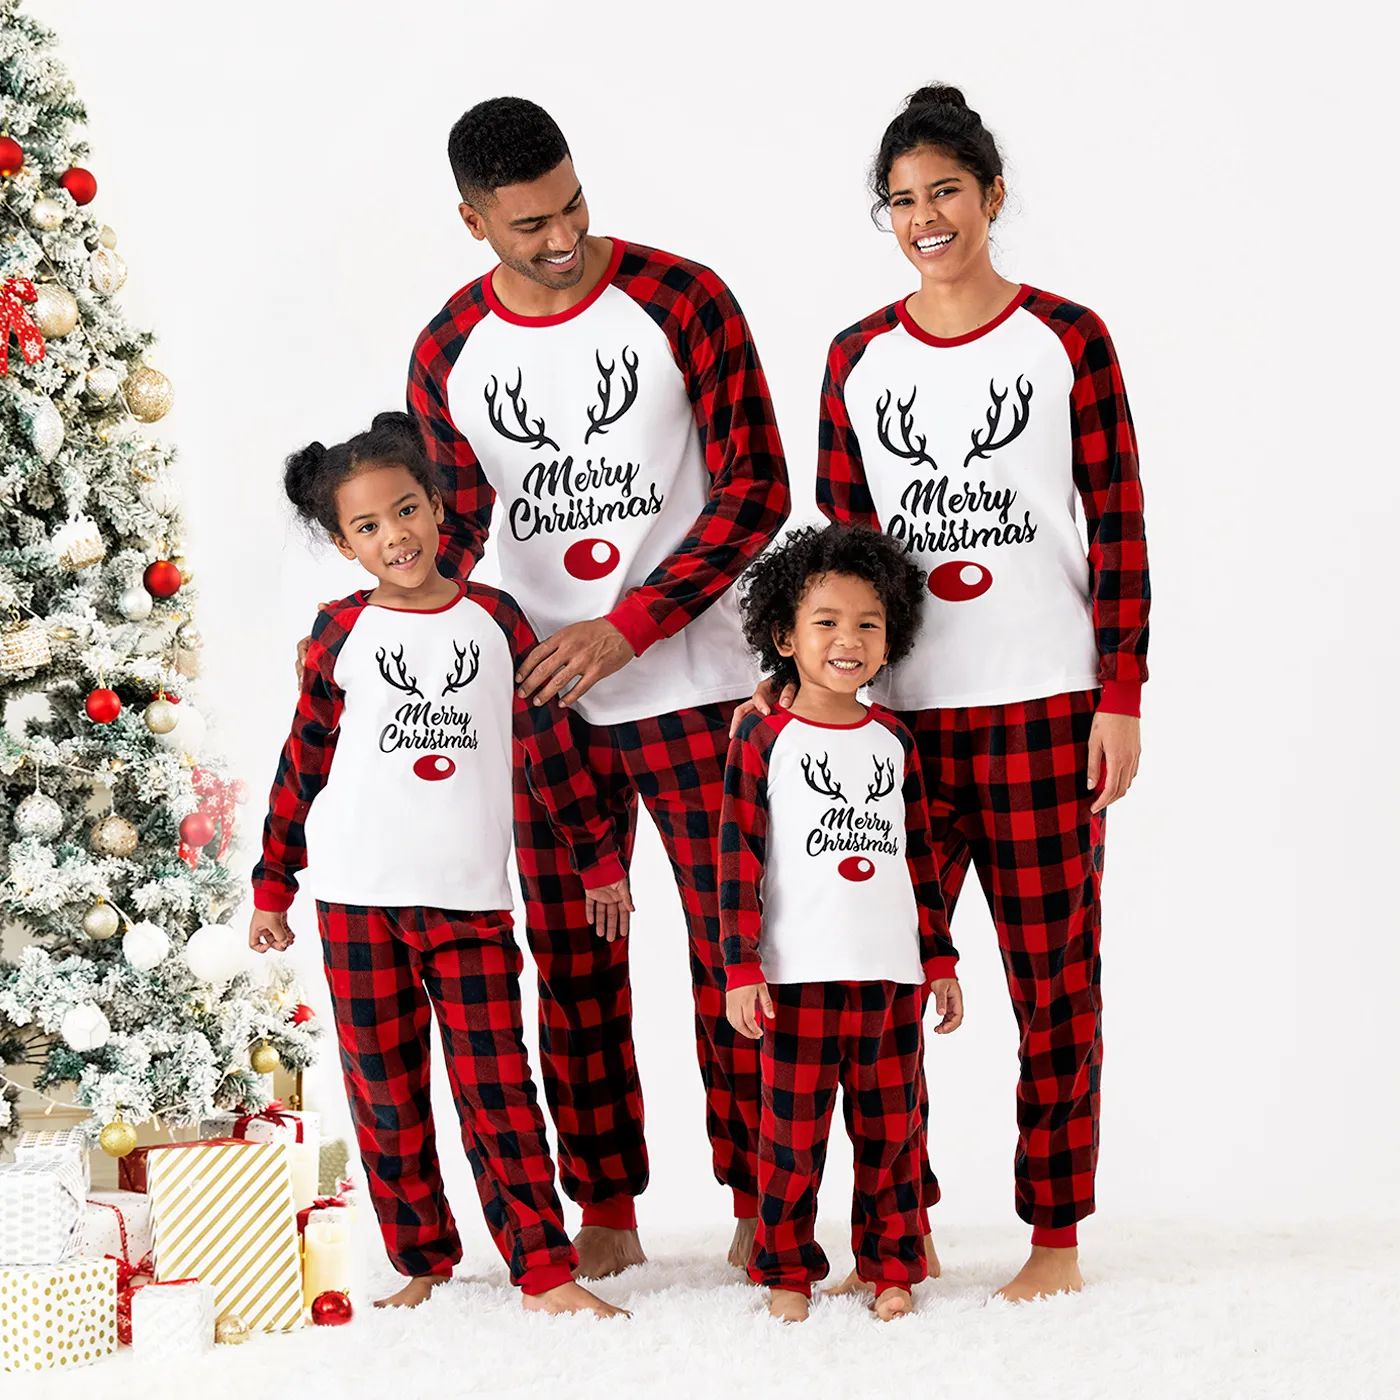 Christmas Reindeer Print Plaid Long-sleeve Family Matching Fleece Pajamas Sets (Flame Resistant)